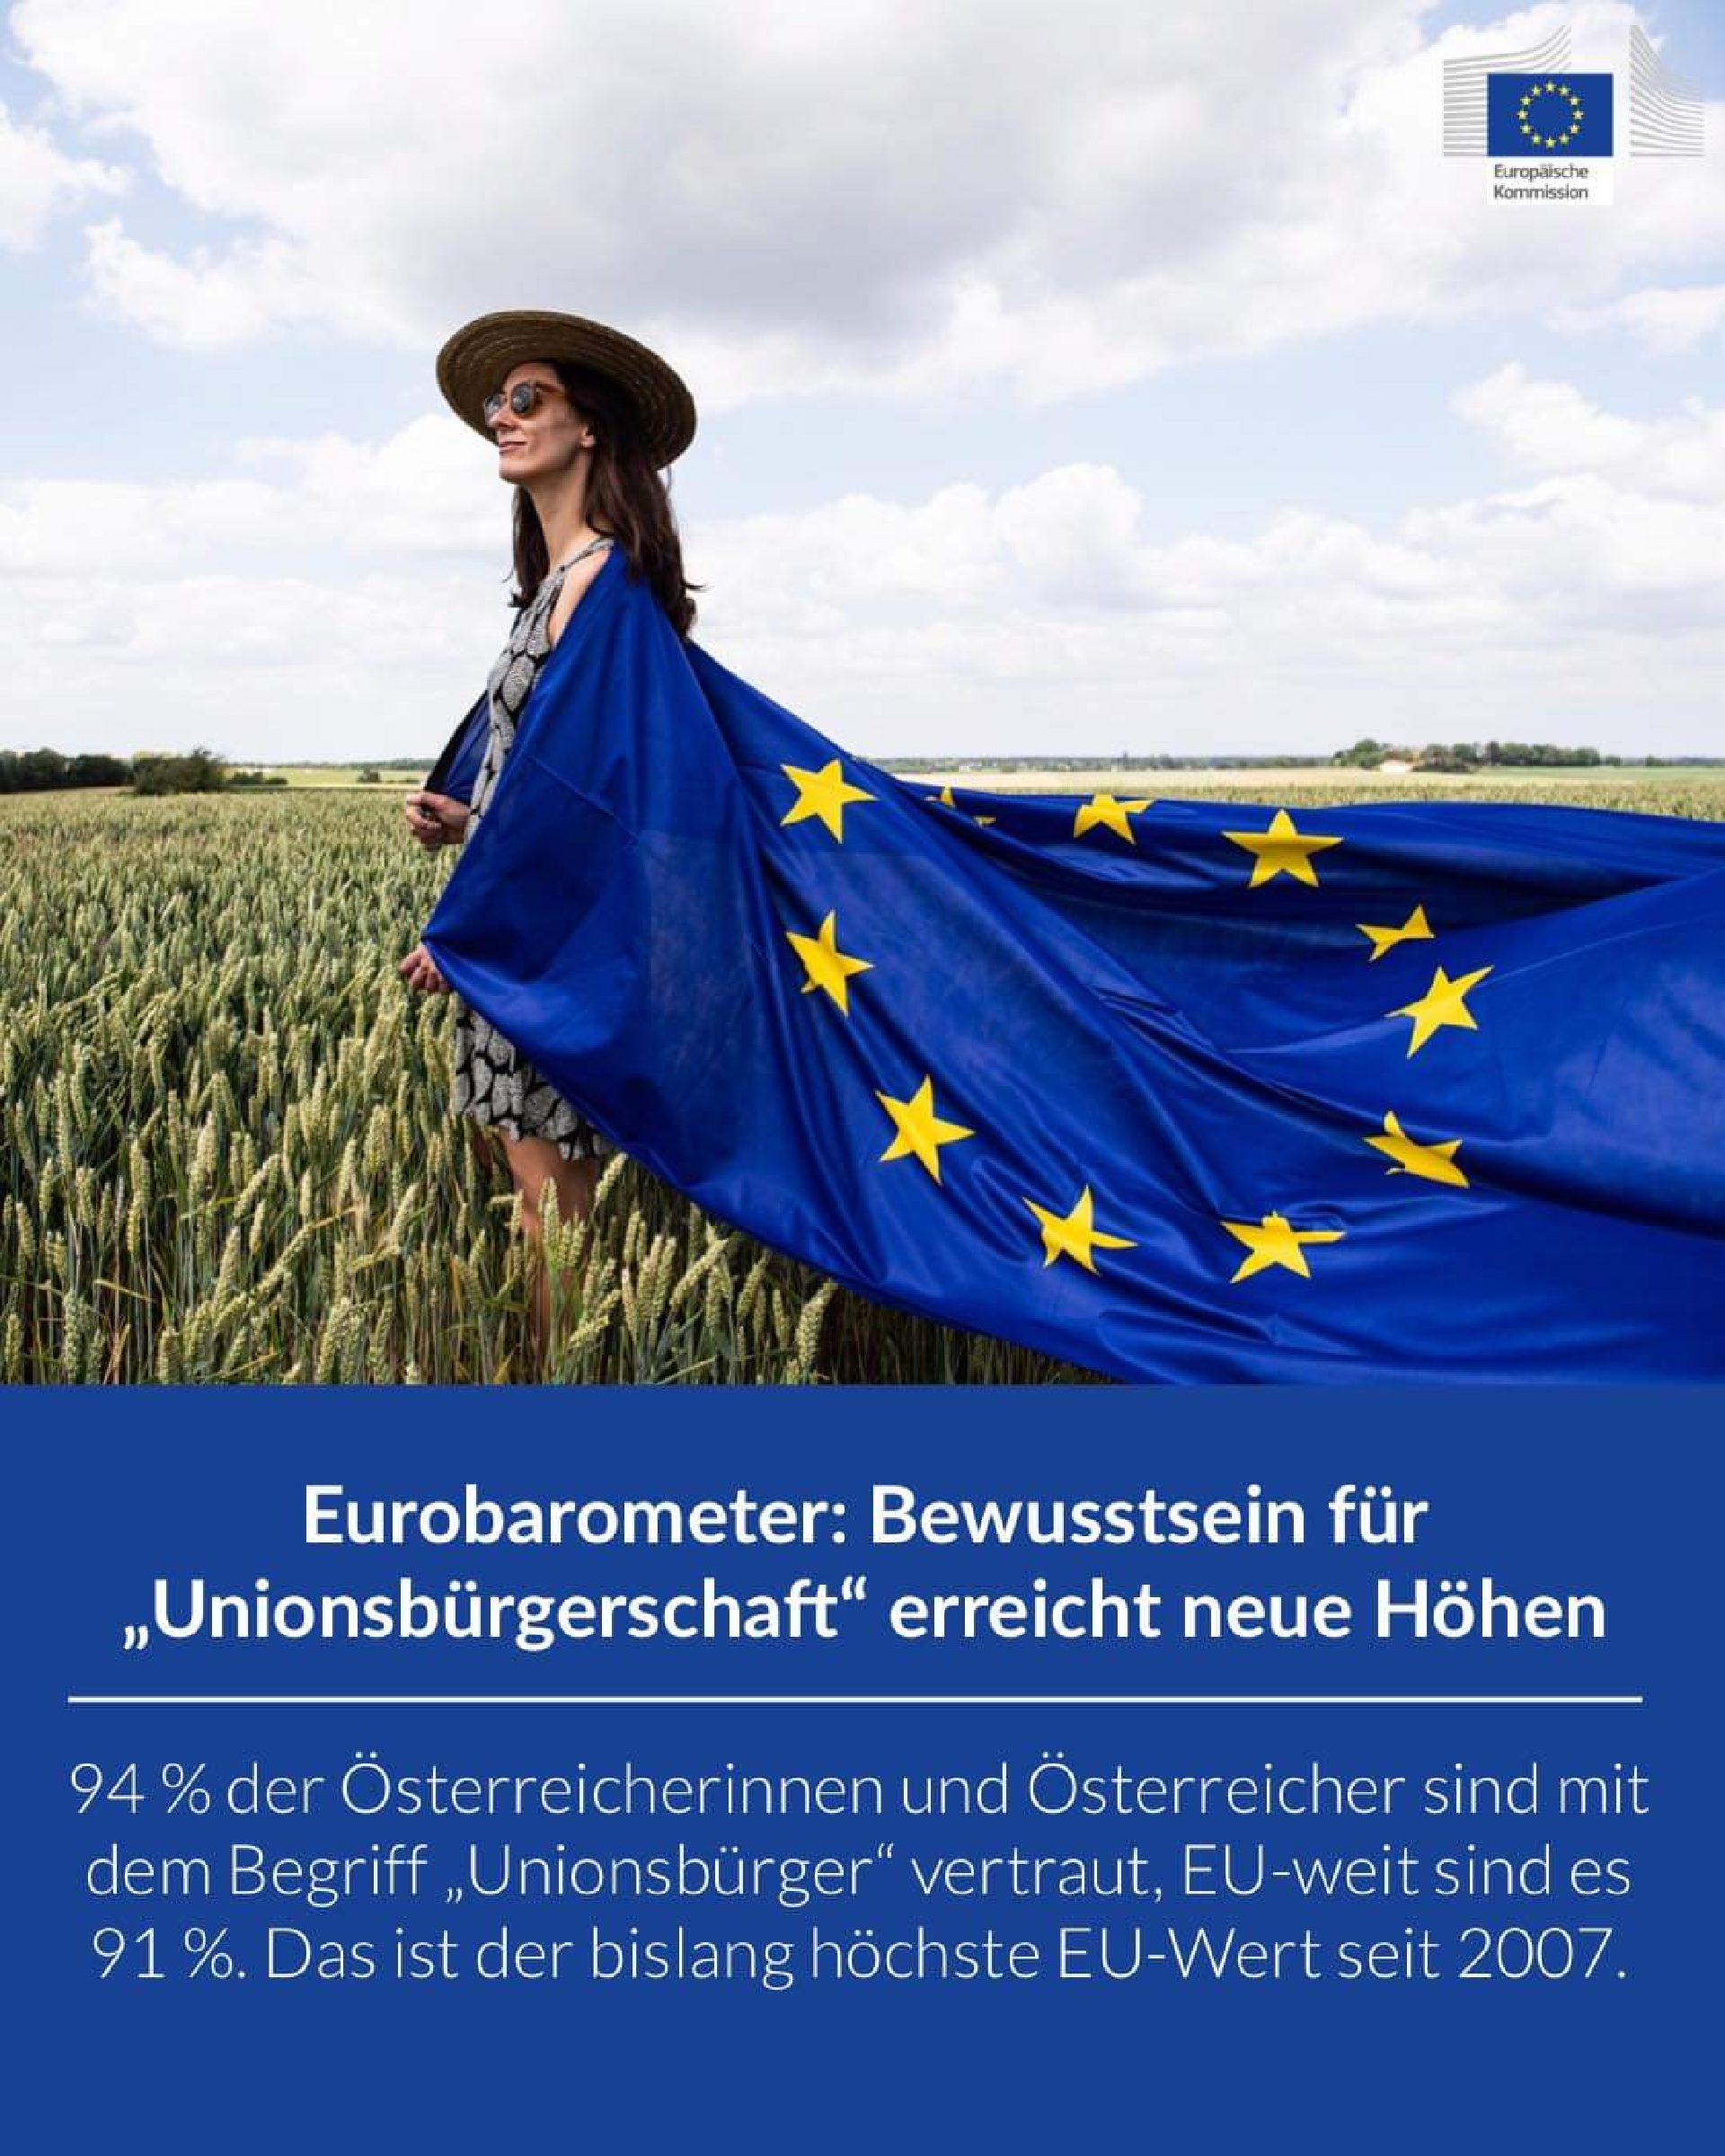 Mehr über den Artikel erfahren Eurobarometer: Bewusstsein für „Unionsbürgerschaft“ erreicht neue Höhen